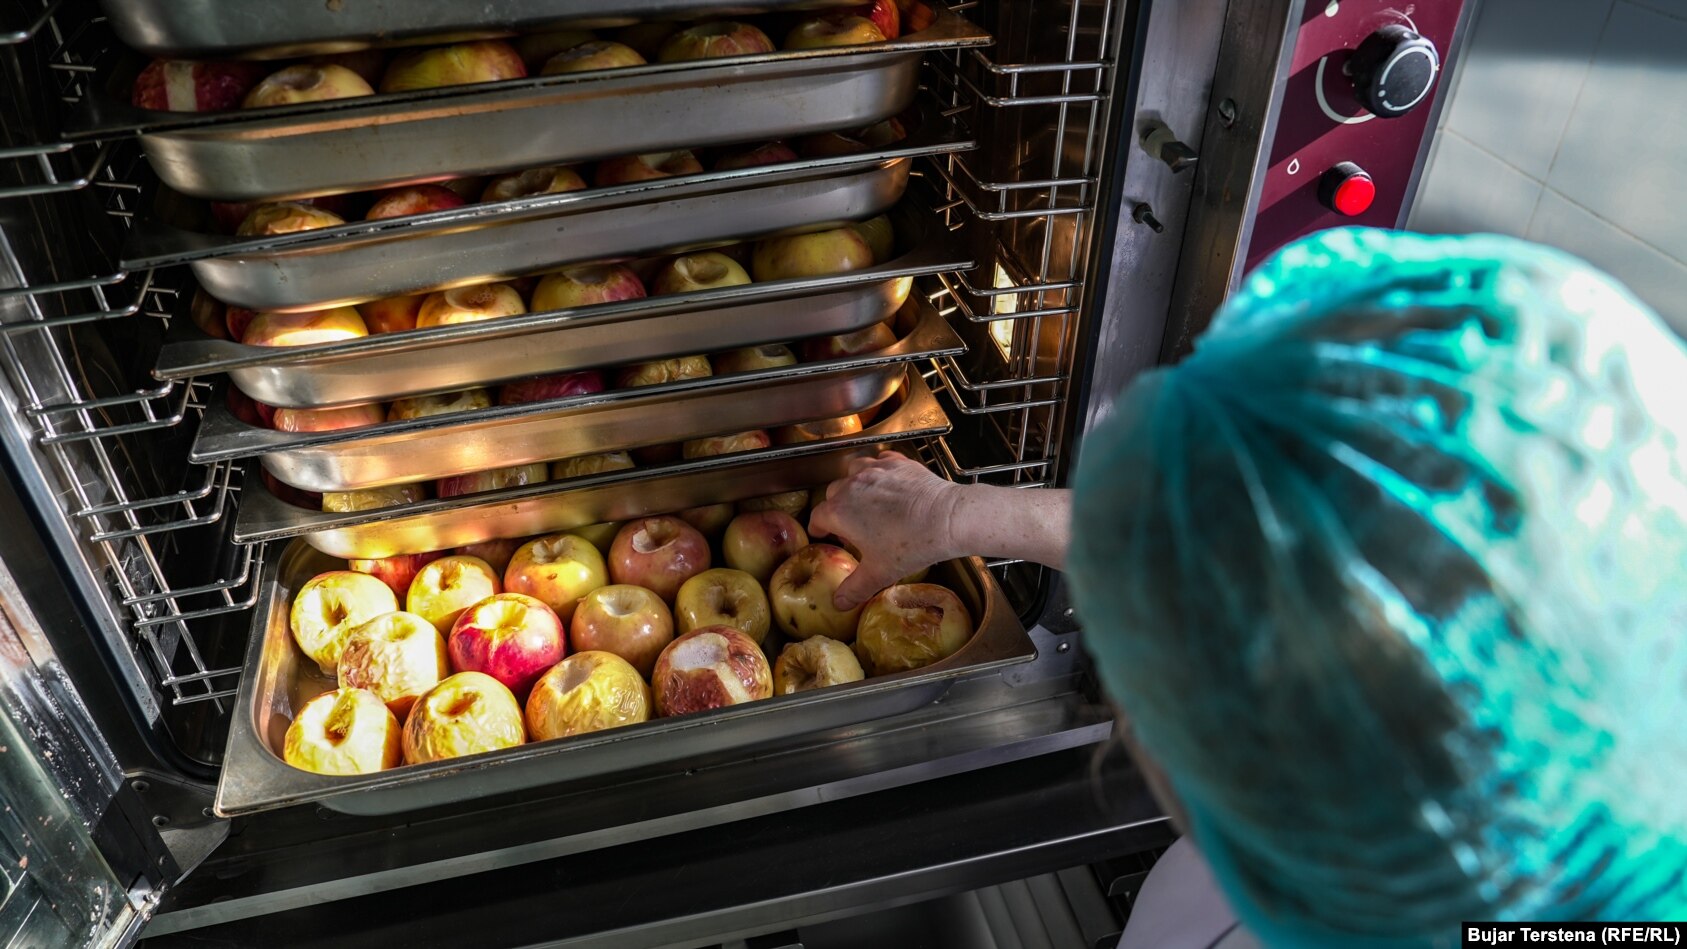 Disa mollë duke u përgatitur në Kuzhinën Qendrore në Prishtinë.